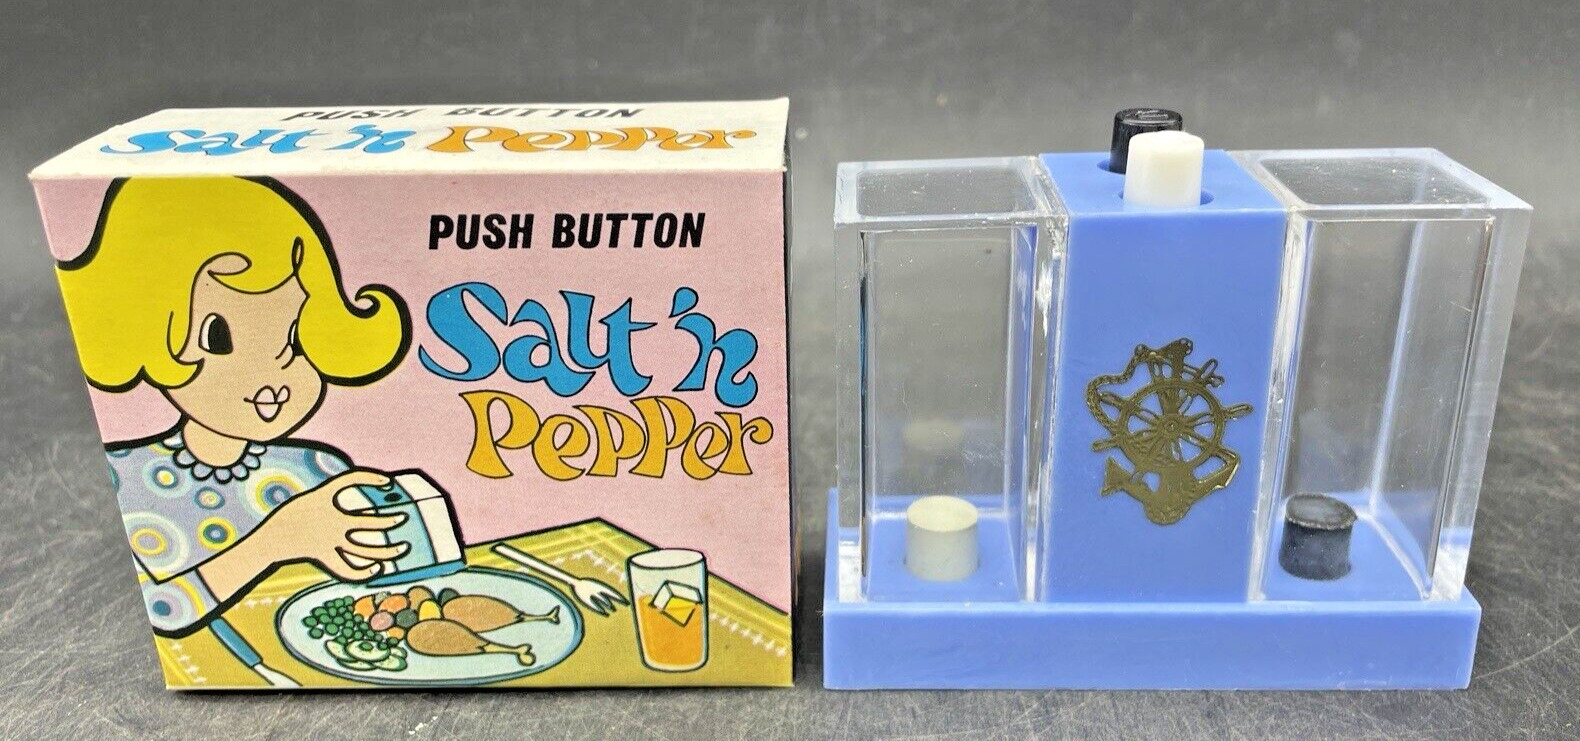 VINTAGE BLUE Push Button Salt & Pepper Dispenser Shaker New Old Store Stock MCM